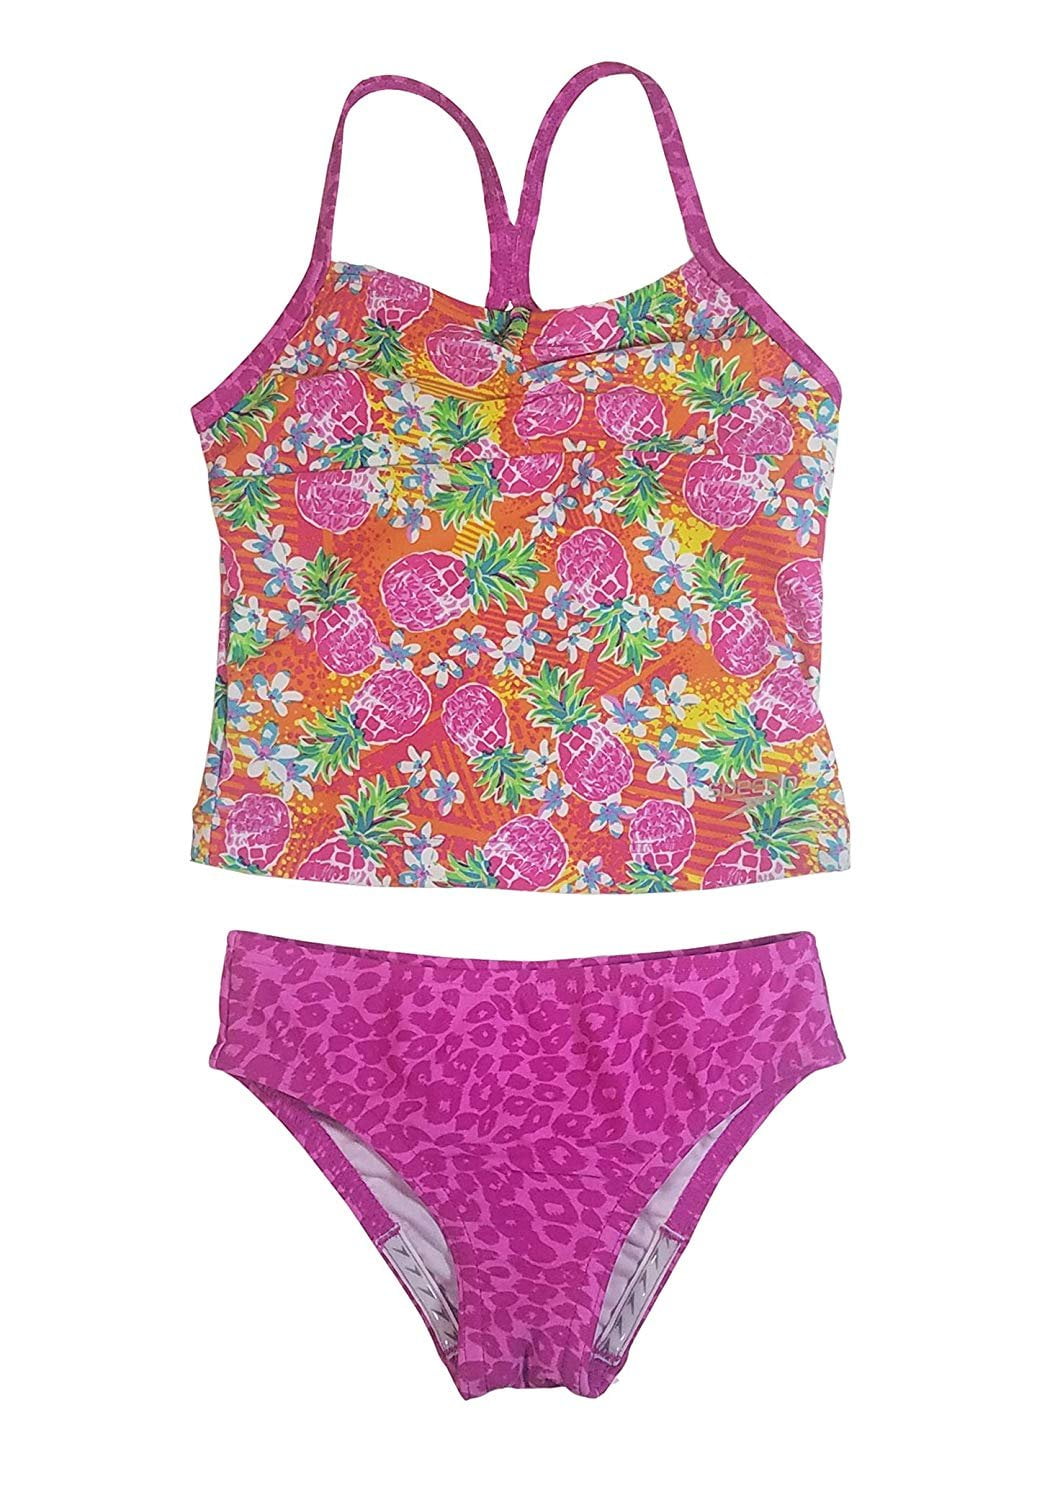 kleinhandel beheerder Onderhoud Speedo Girl's Sporty Splice Tankini 2 Piece Swimsuit (16, Pink/Pineapple) -  Walmart.com